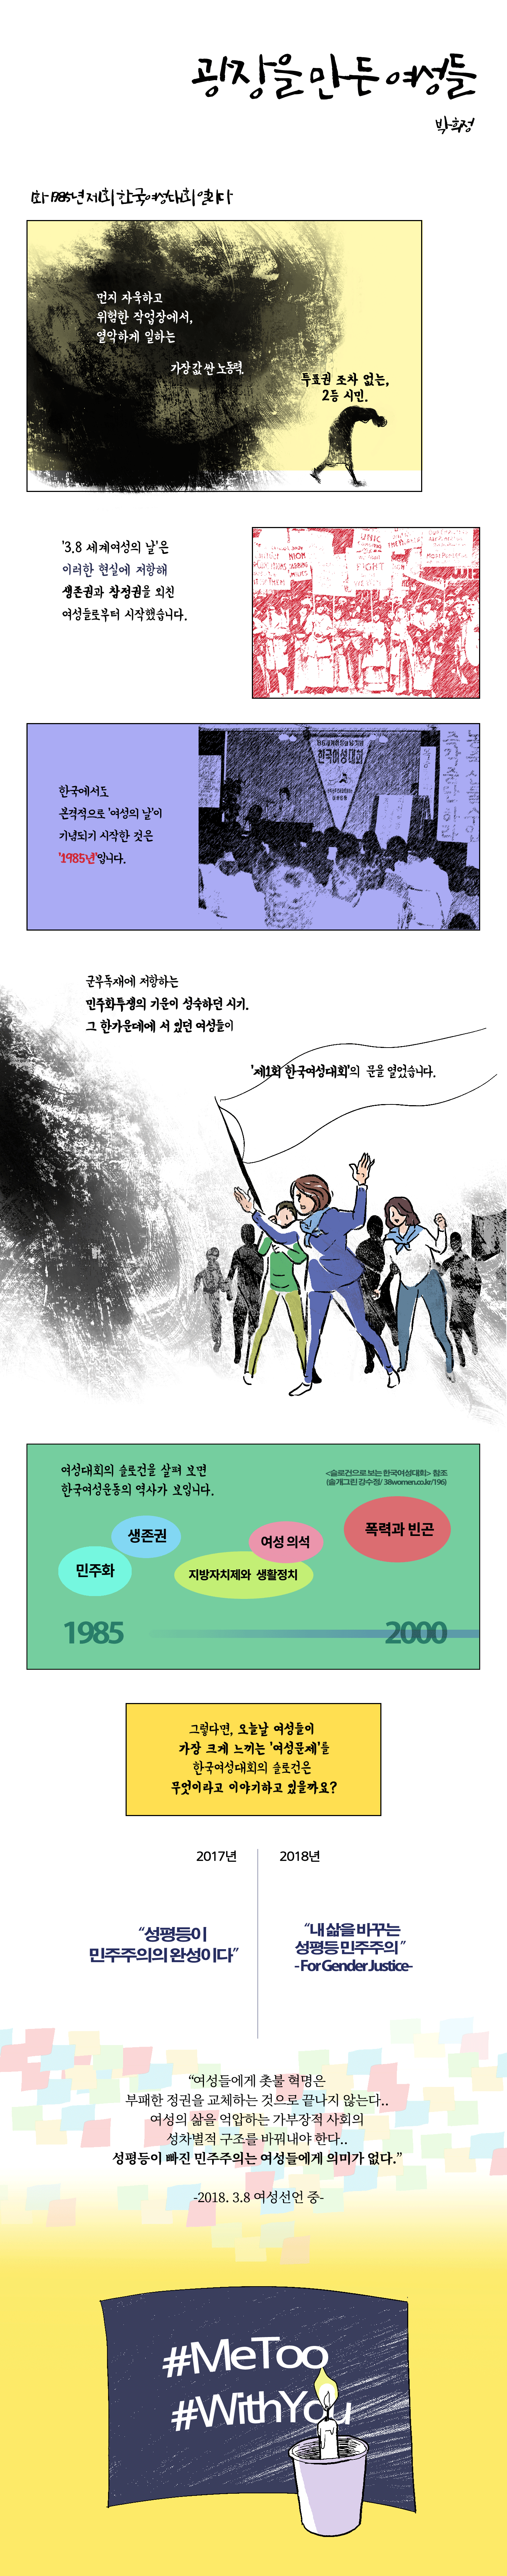 1화, 1985년 제1회 한국여성대회 열리다 사진